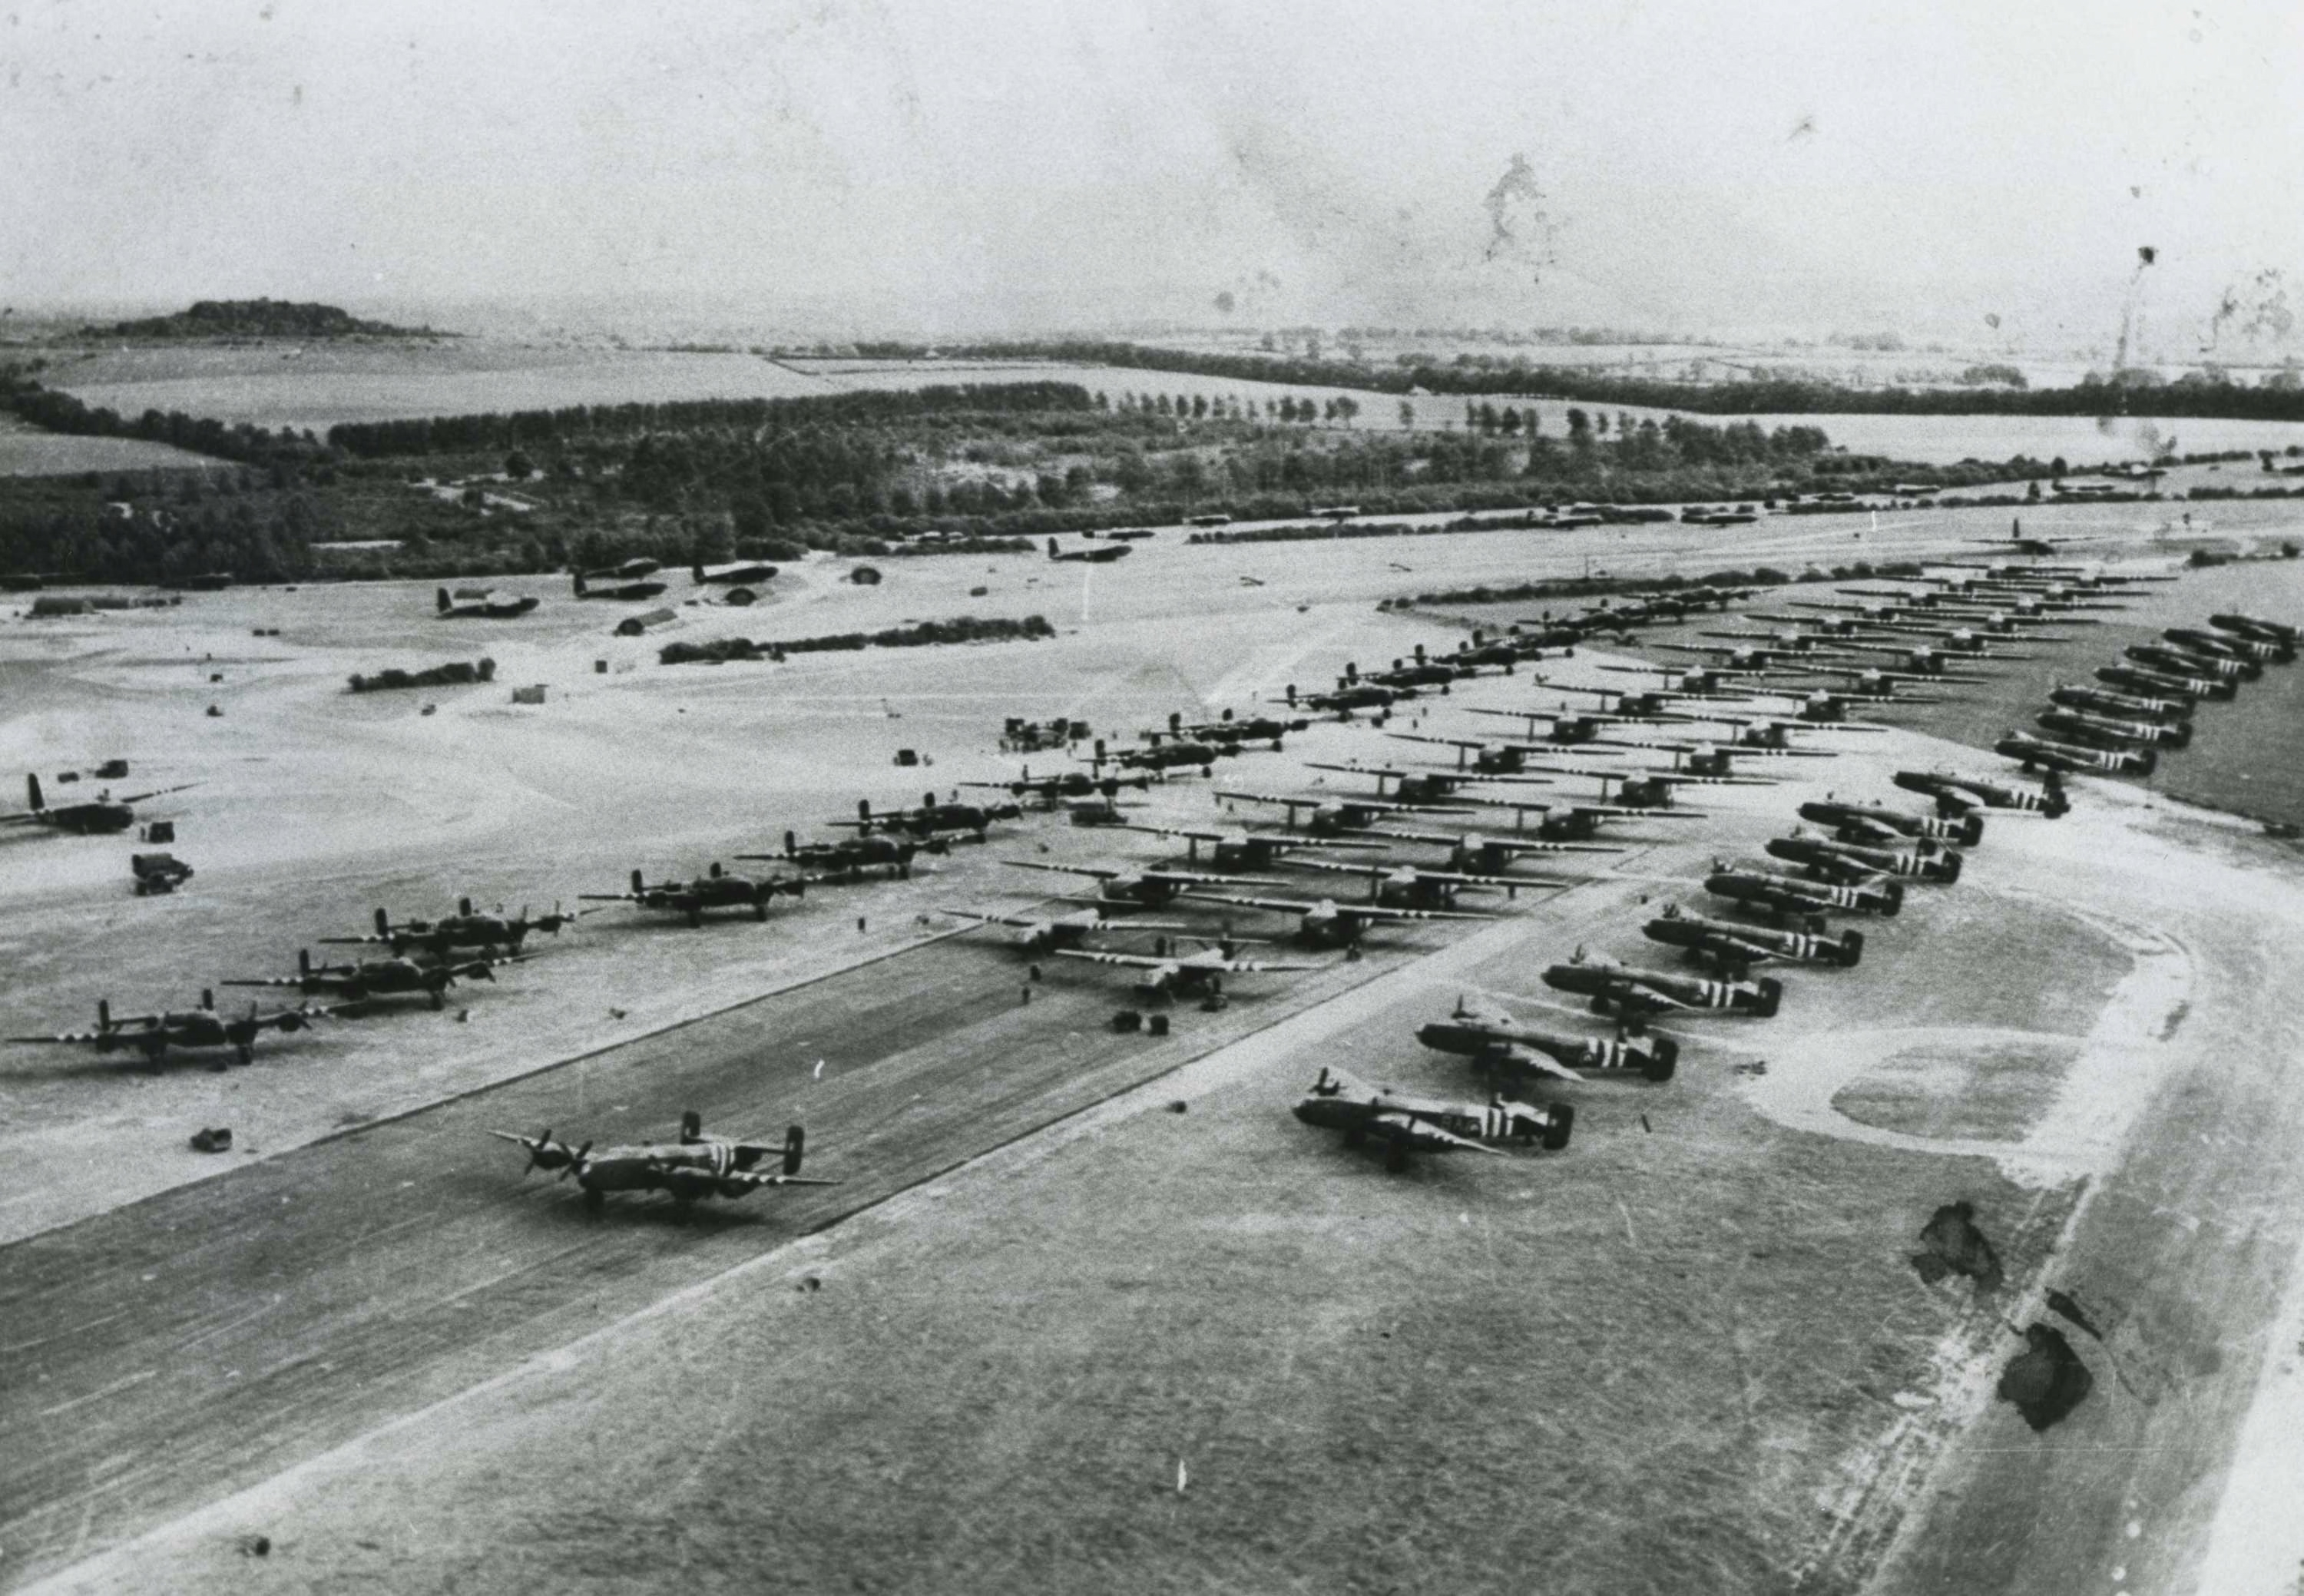 Brits vliegveld vlak voor D-Day 